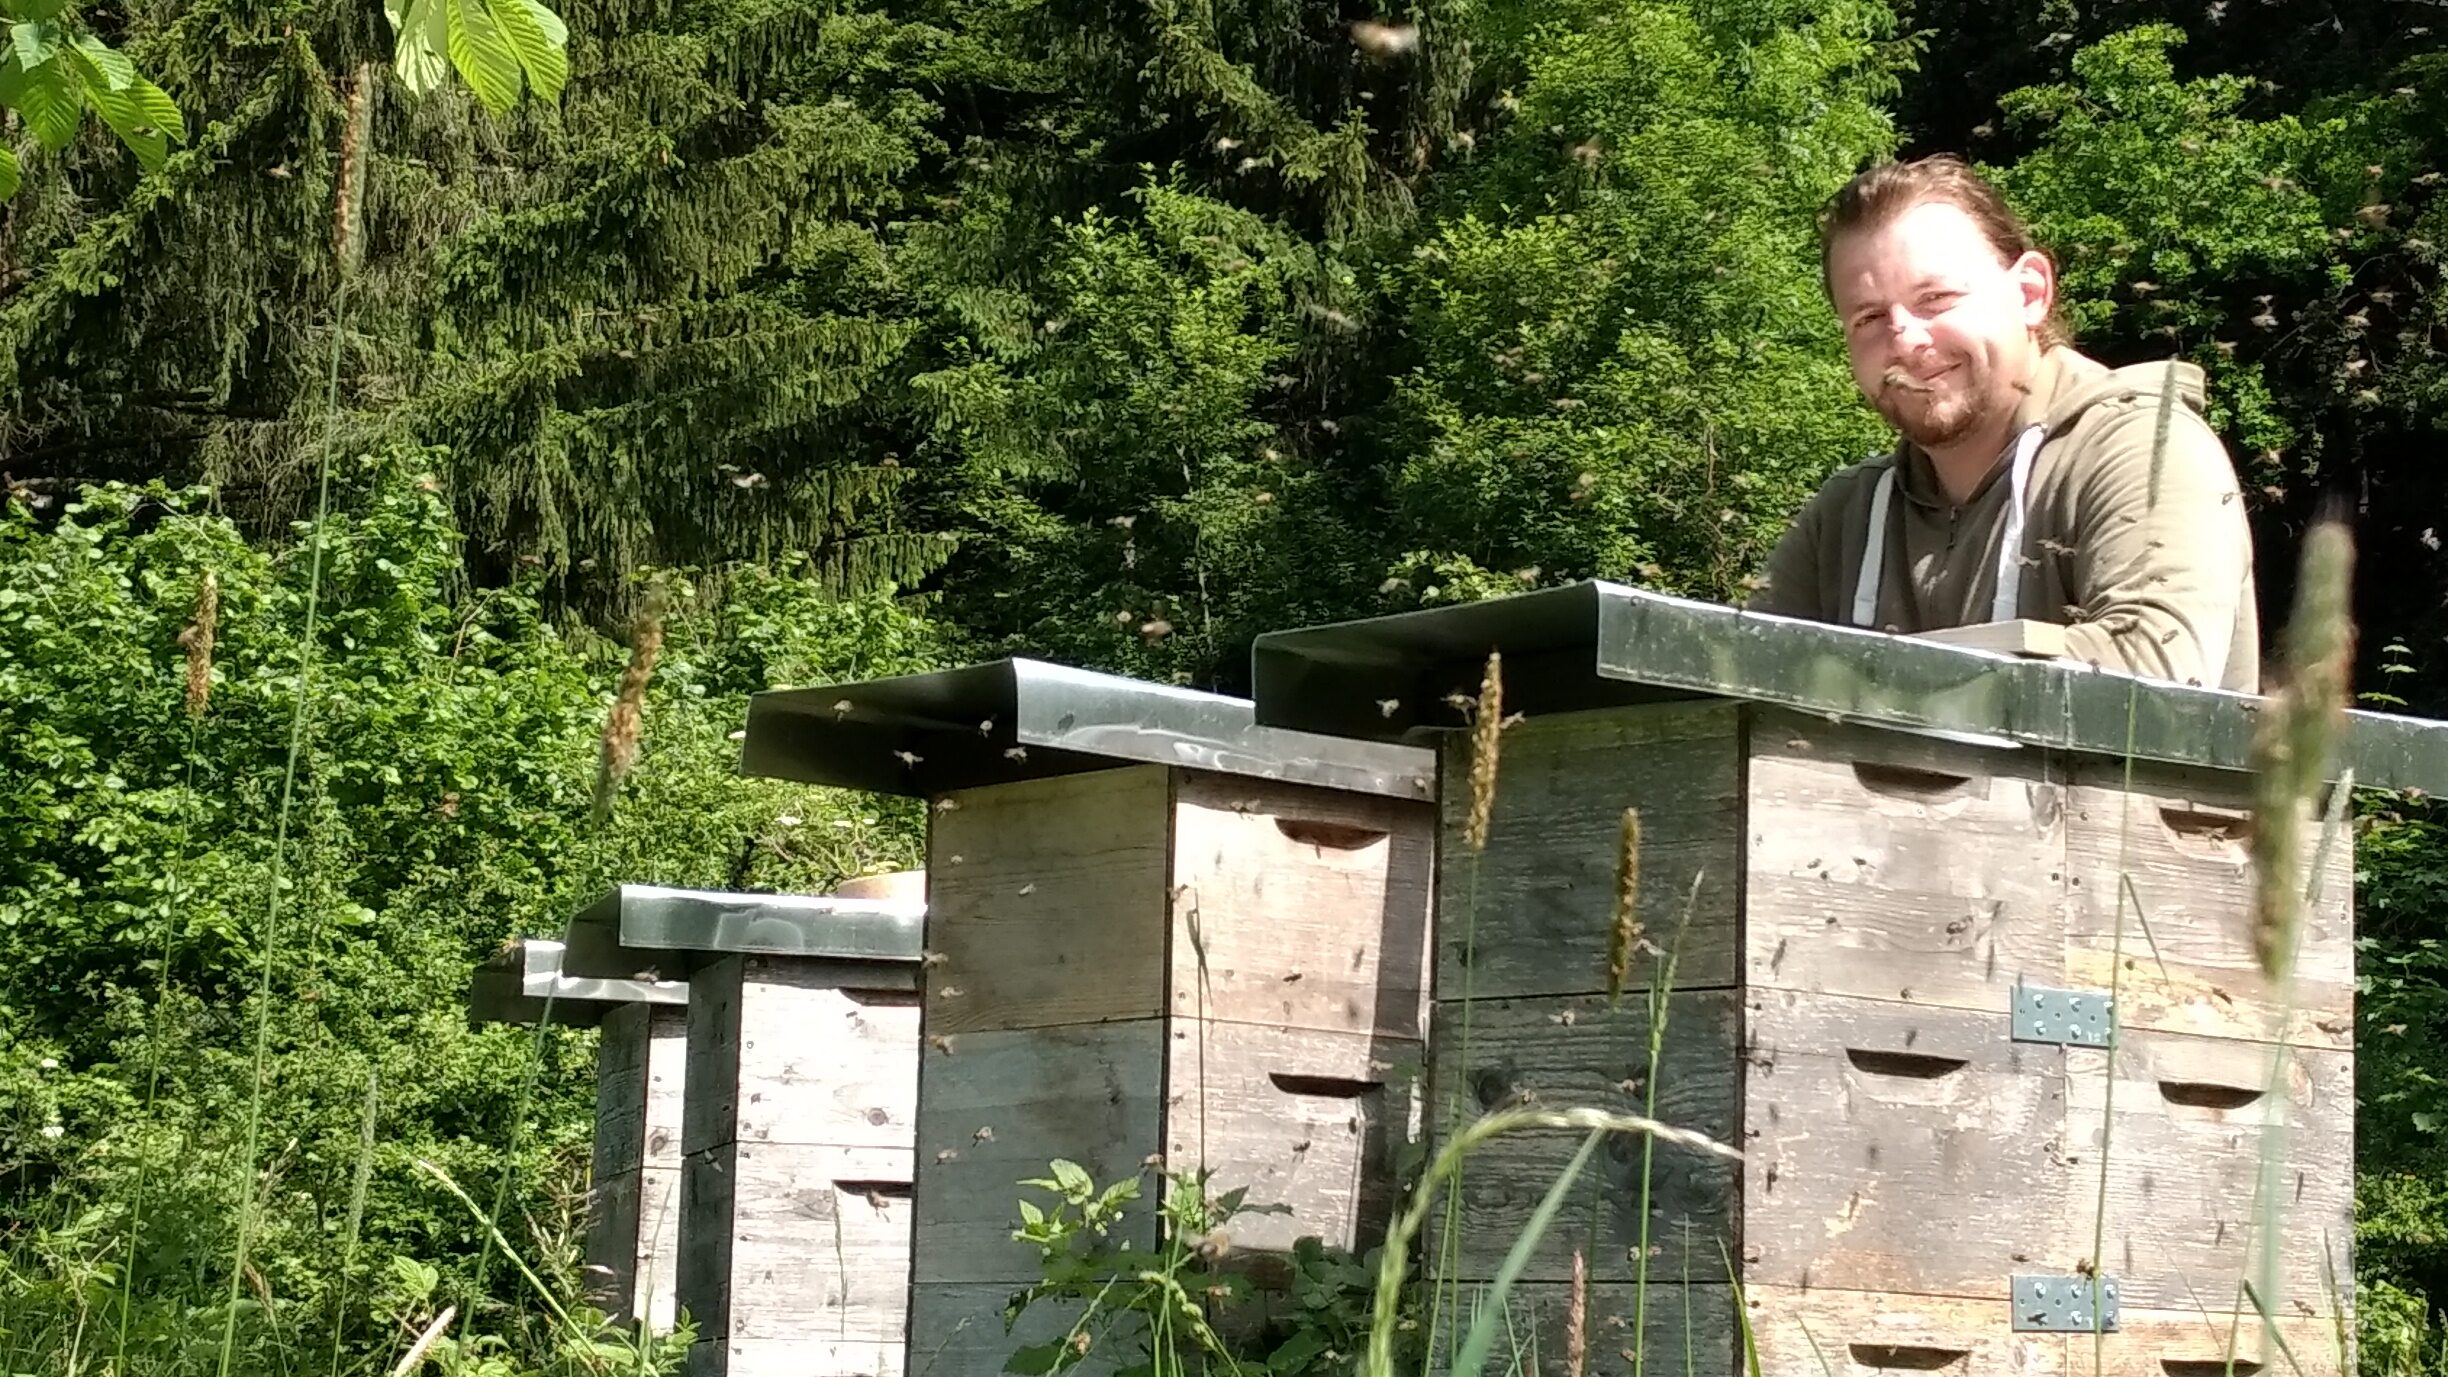 Imker Michael Schachinger steht ohne Imkeranzug hinter seinen Bienenstöcken in einer Waldlichtung, zahlreiche Bienen fliegen in der Luft